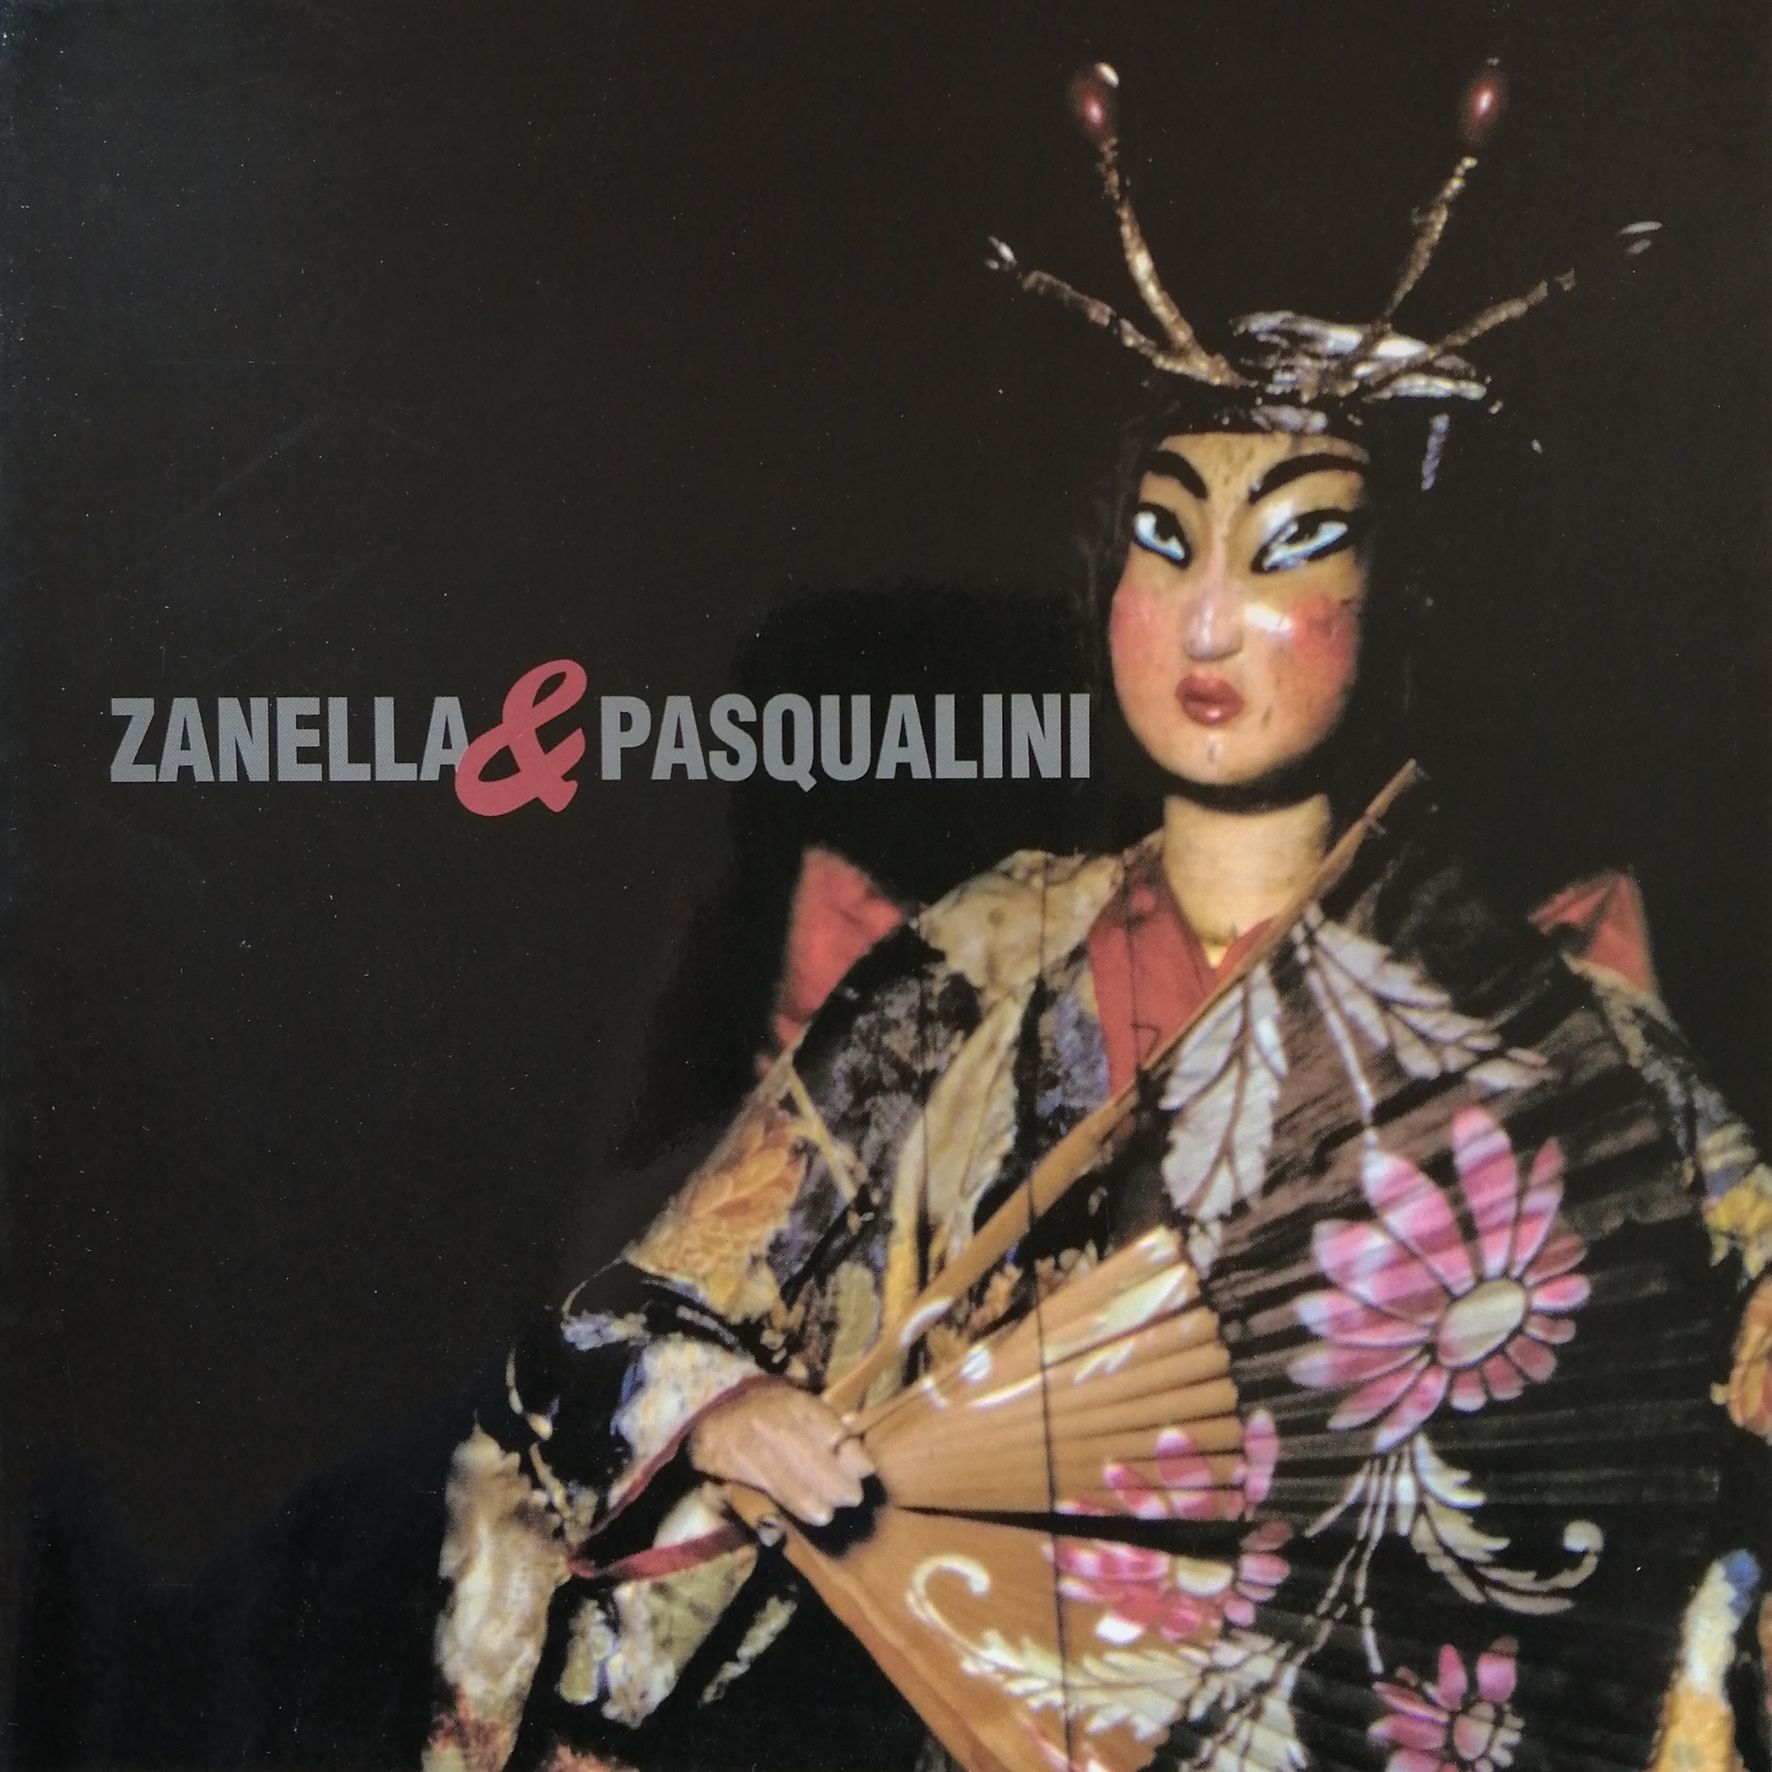 Zanella y Pasqualini